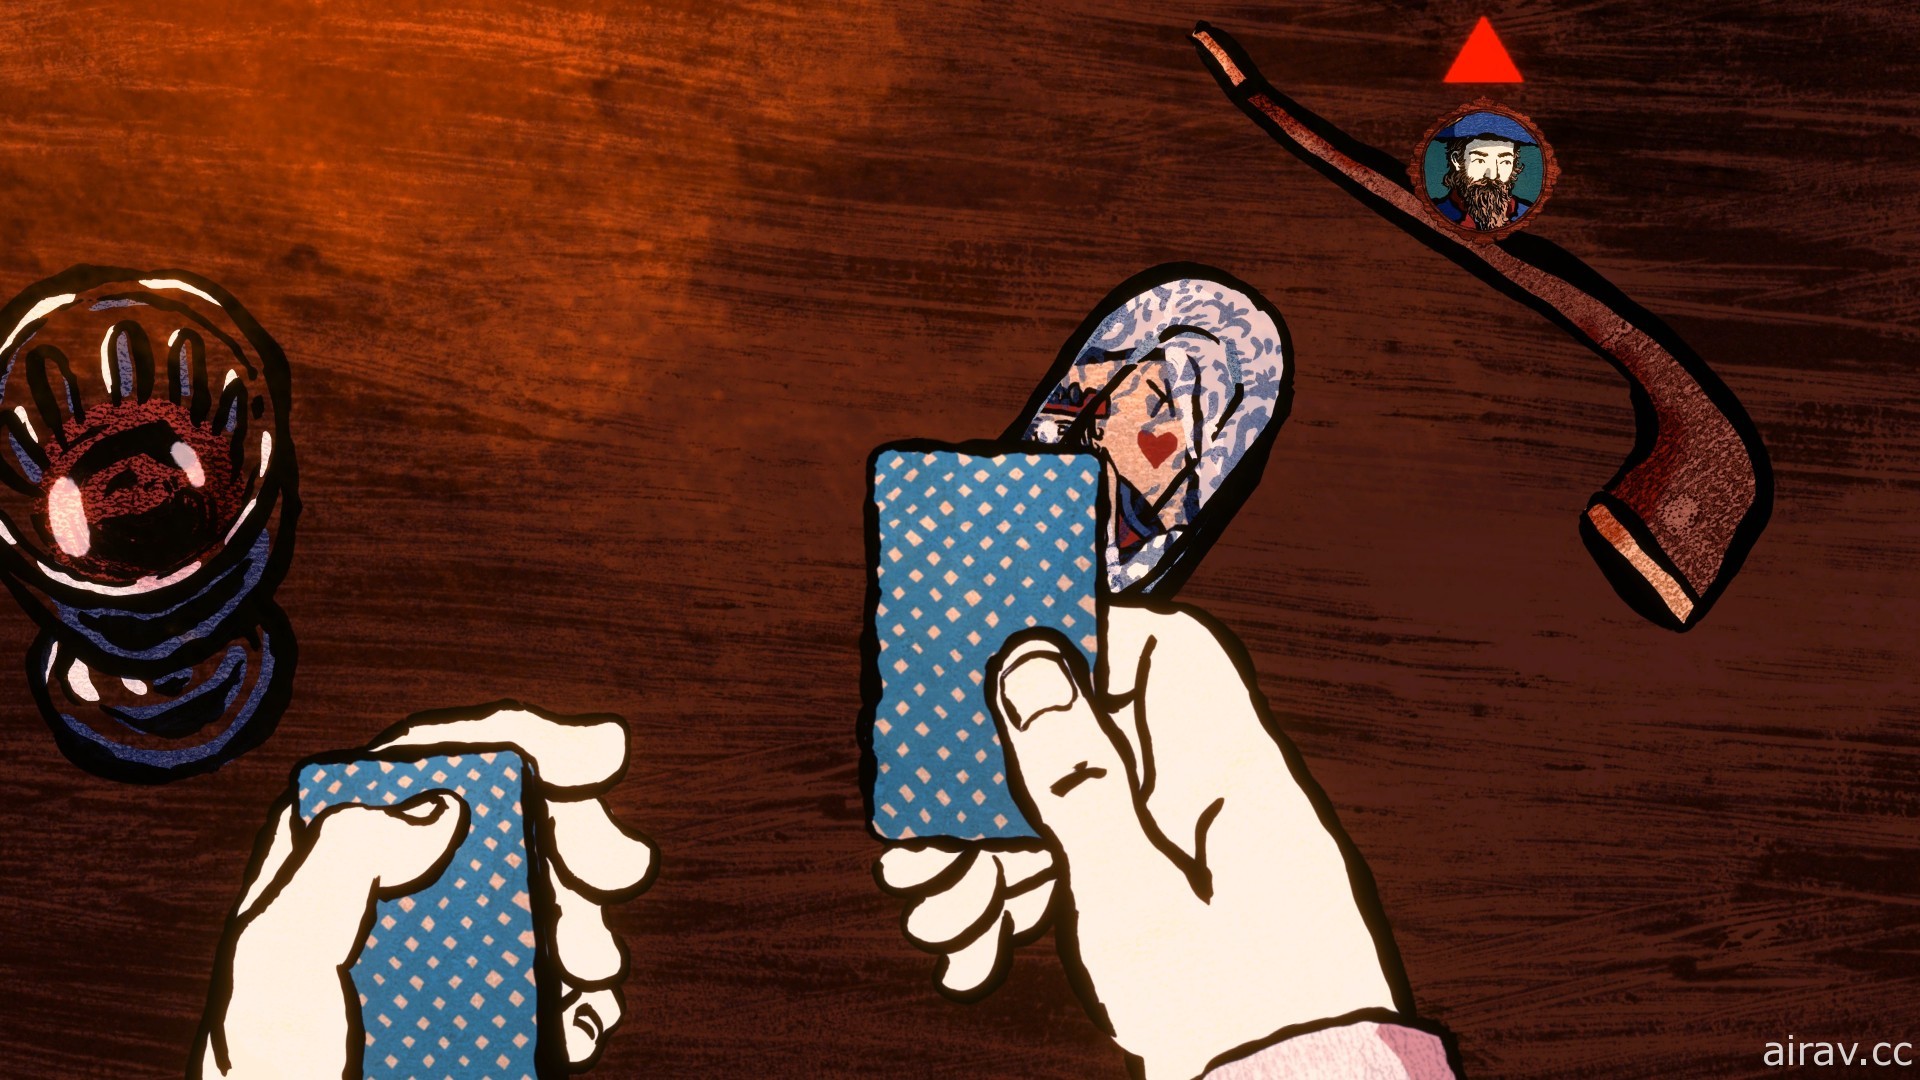 《王权 Reigns》团队新作《王牌卡神 Card Shark》即将发行 展开中世纪欧洲冒险赌局